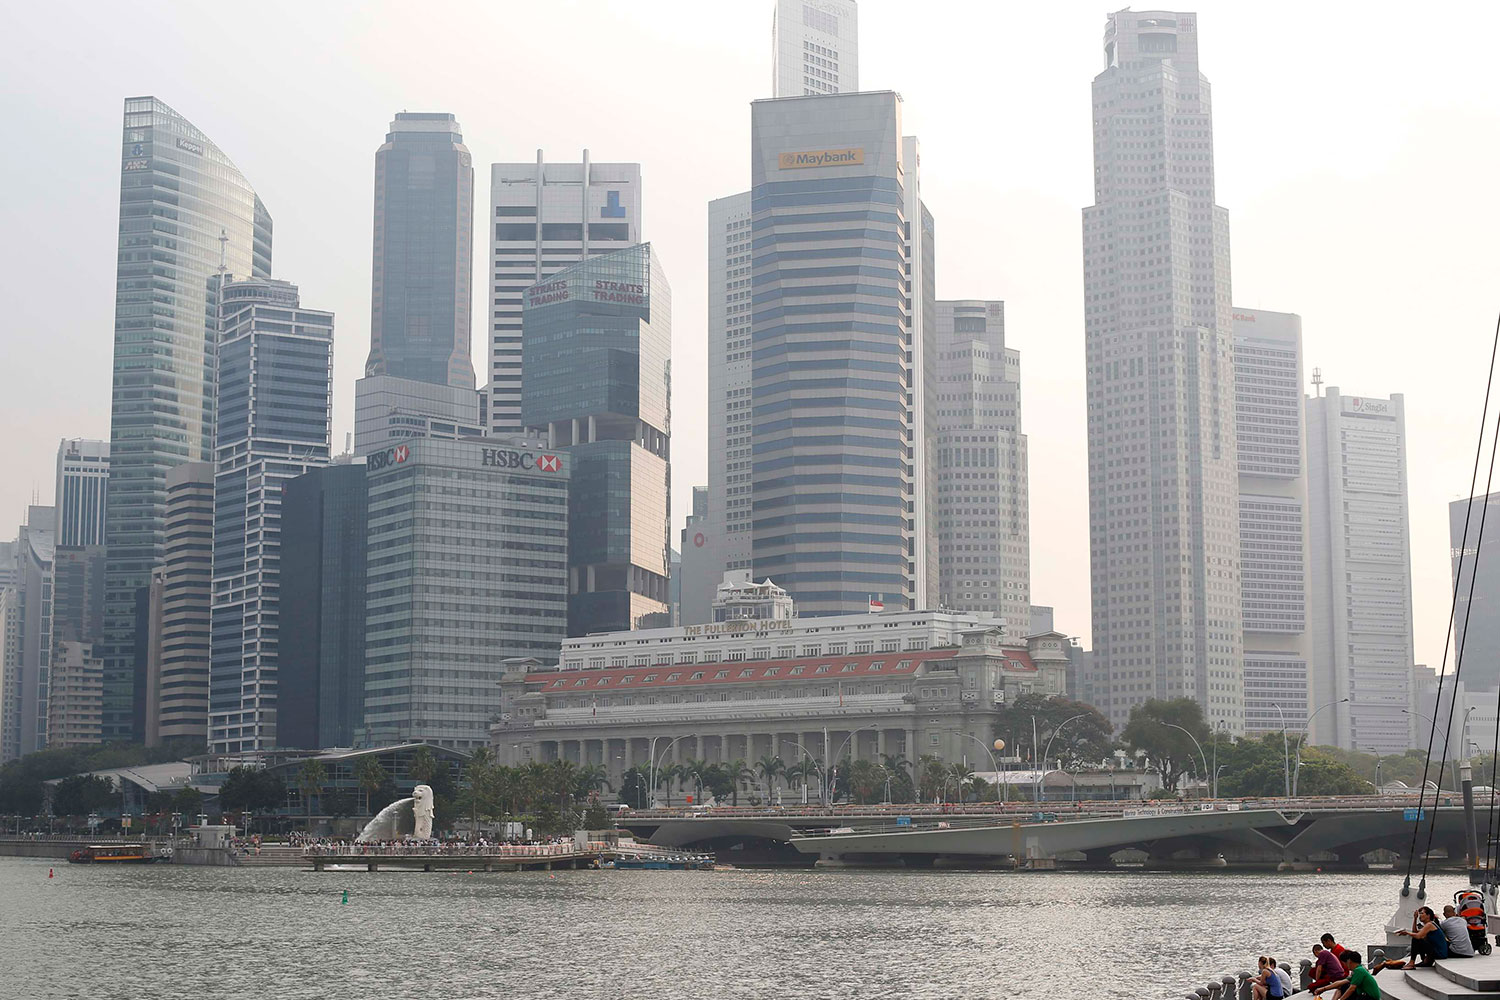 Singapur es la ciudad más cara del mundo para vivir, según un estudio publicado por The Economist